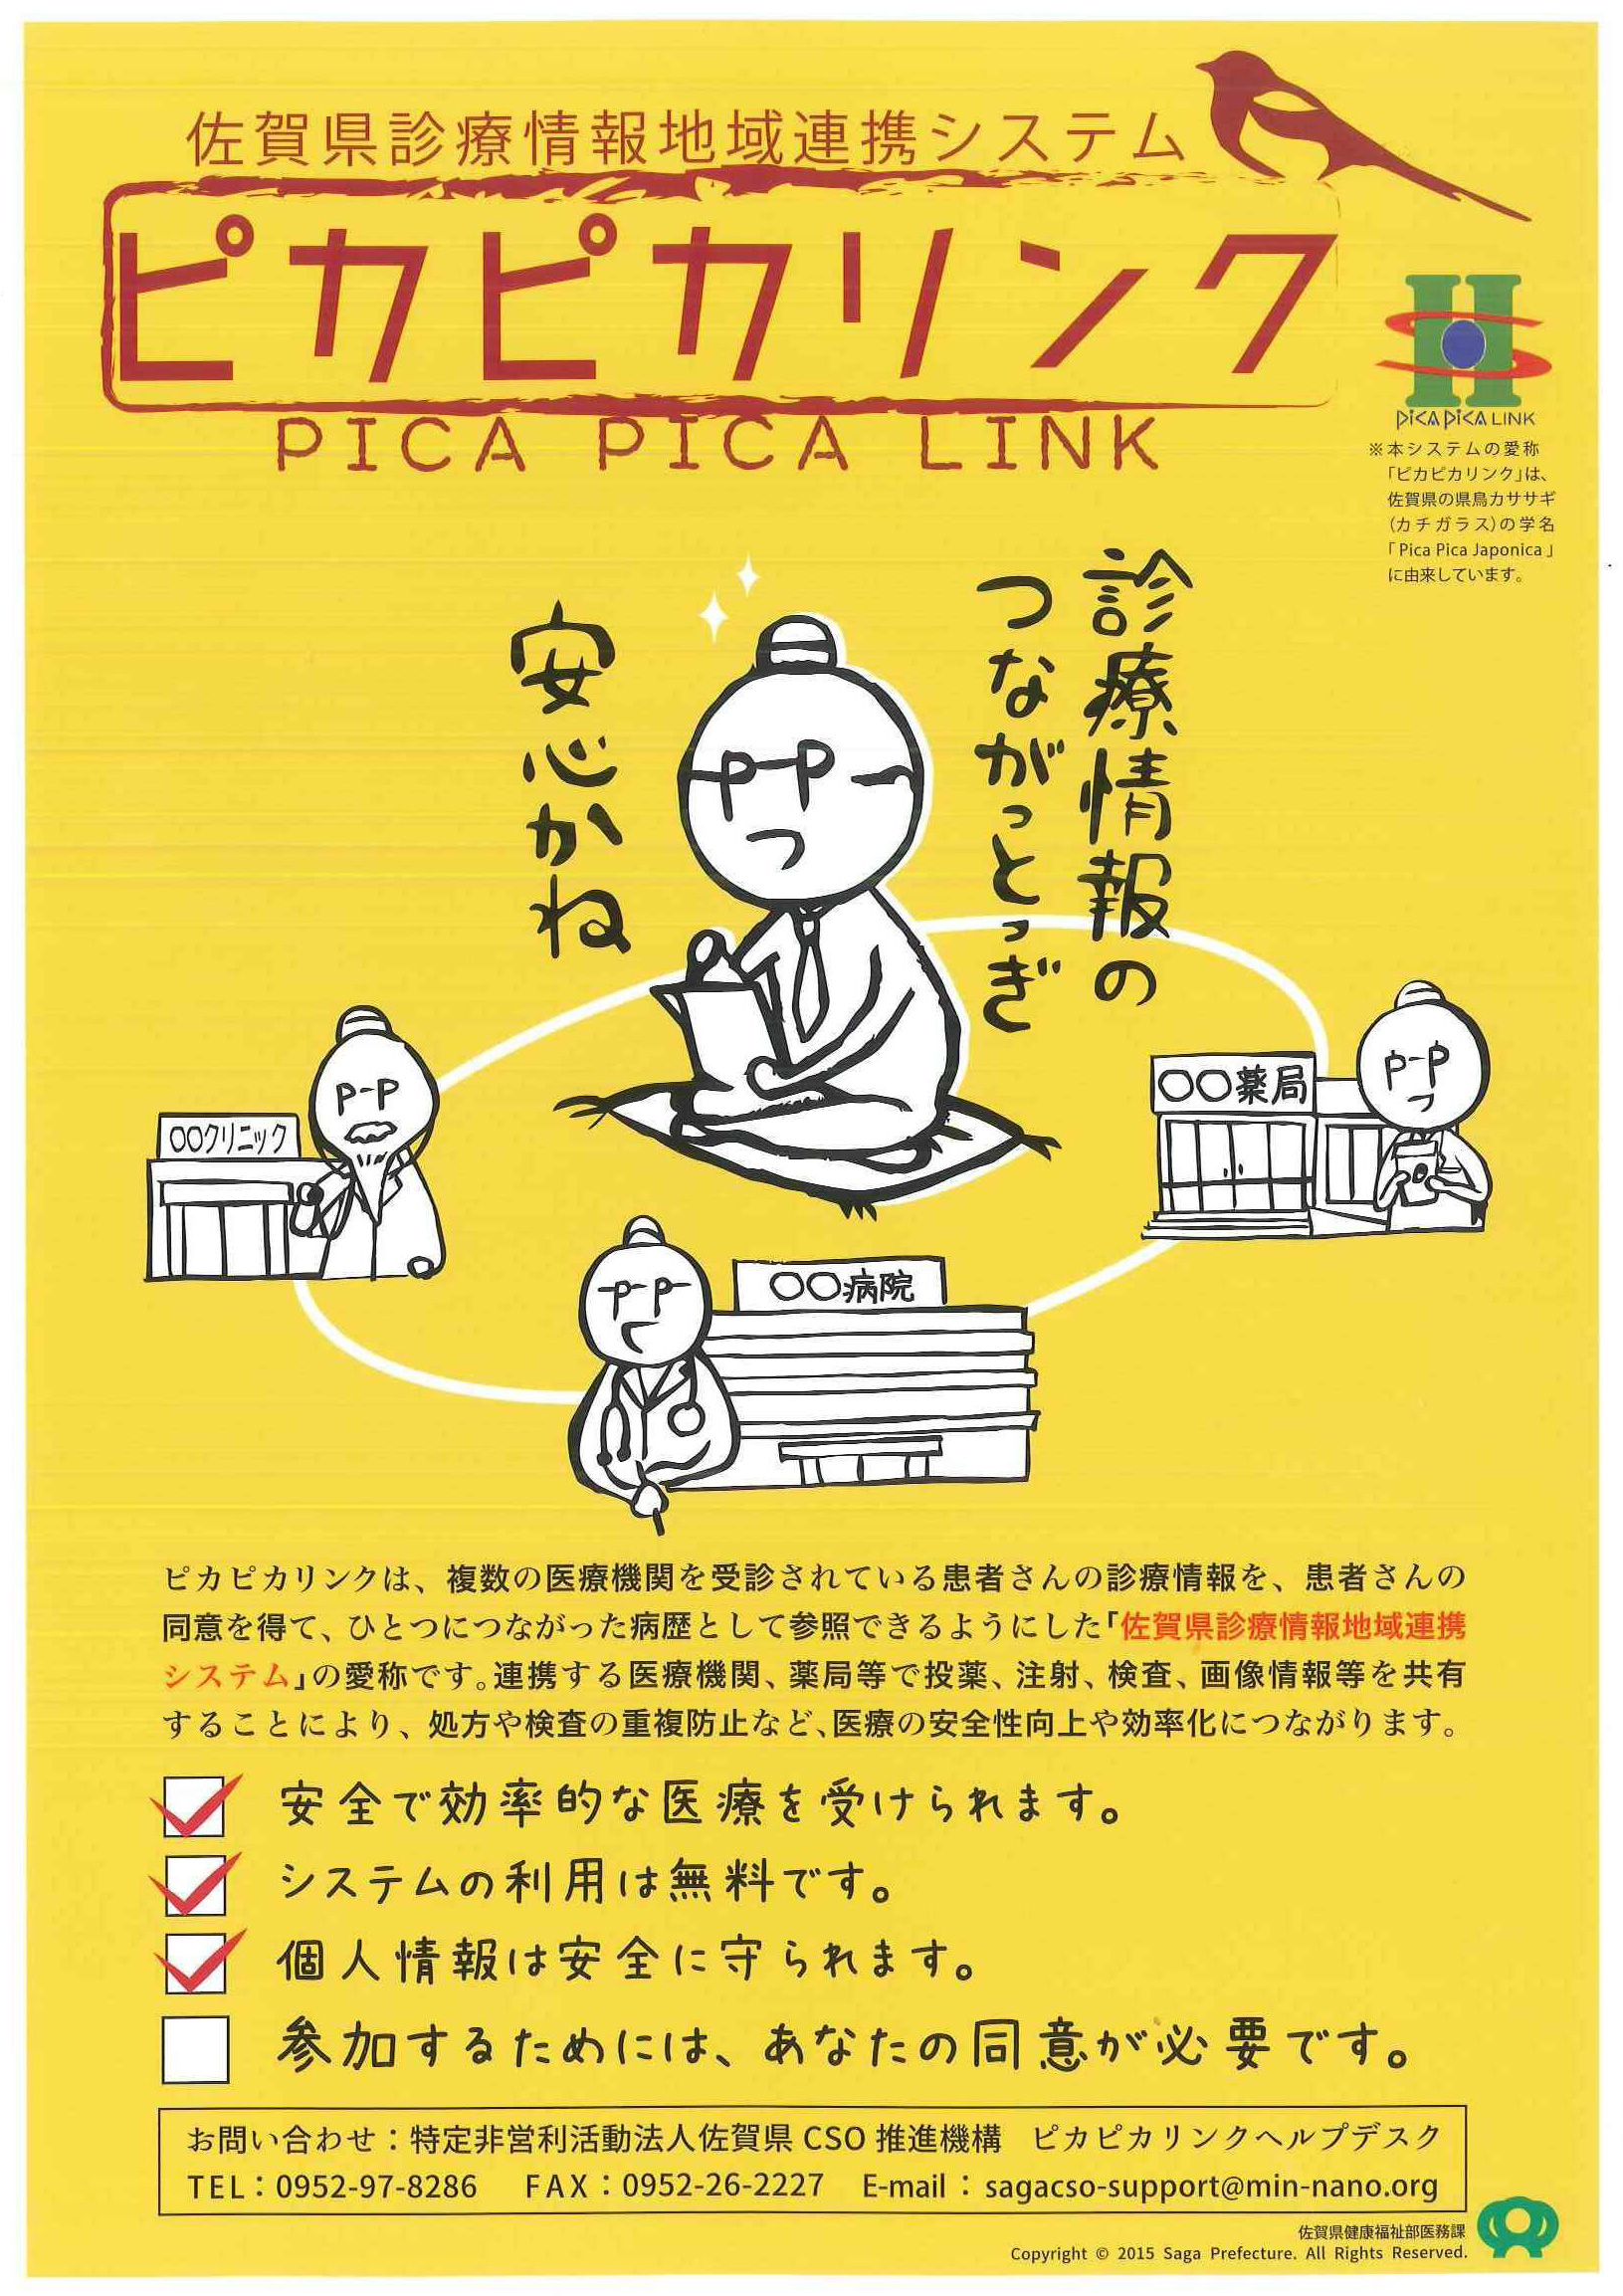 佐賀県診療情報地域連携システム「ピカピカリンク」